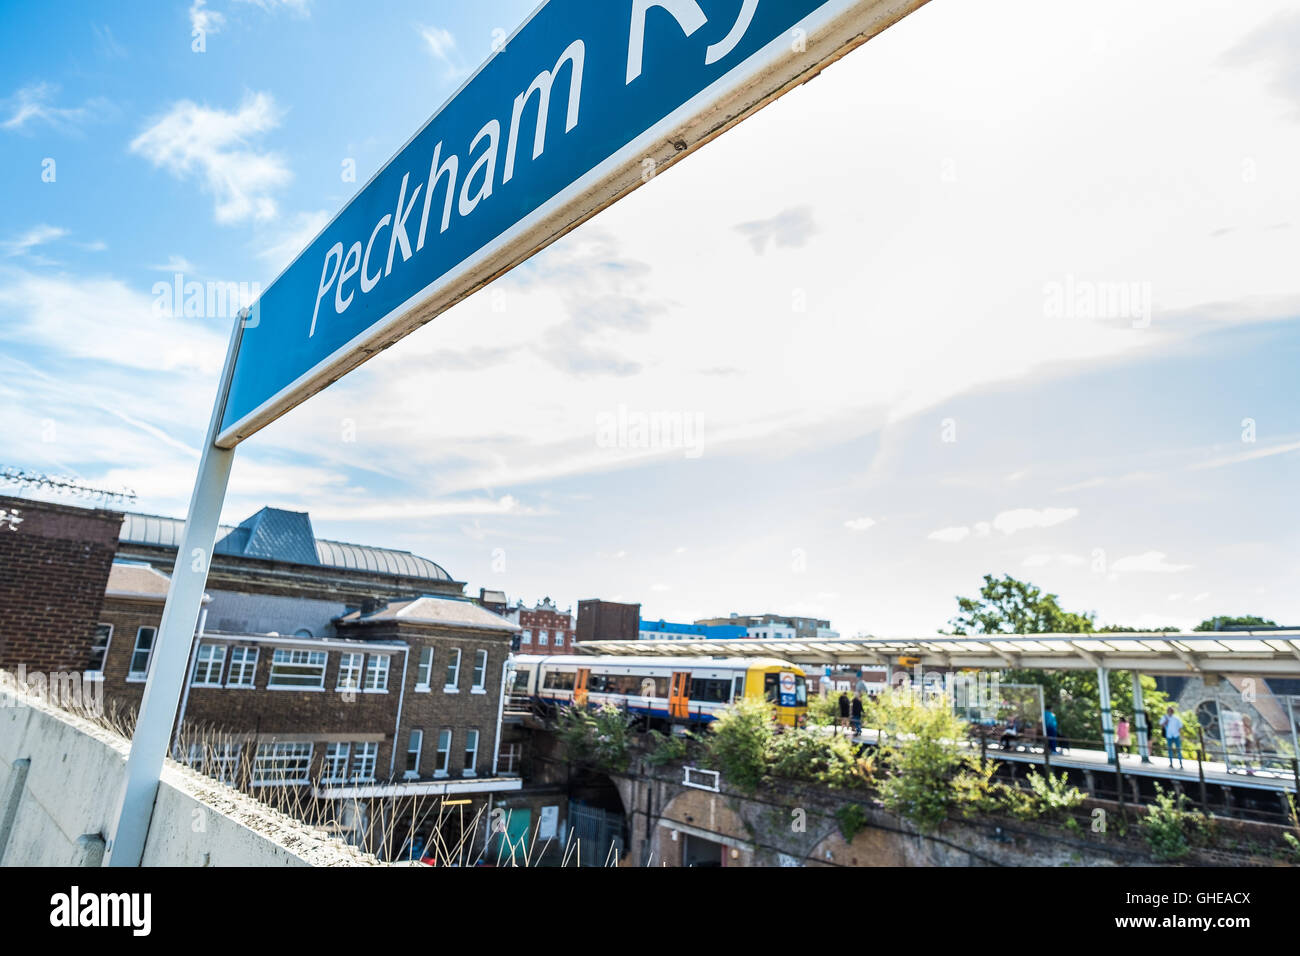 Peckham Rye train station platform, overground, South East London, England, UK Stock Photo